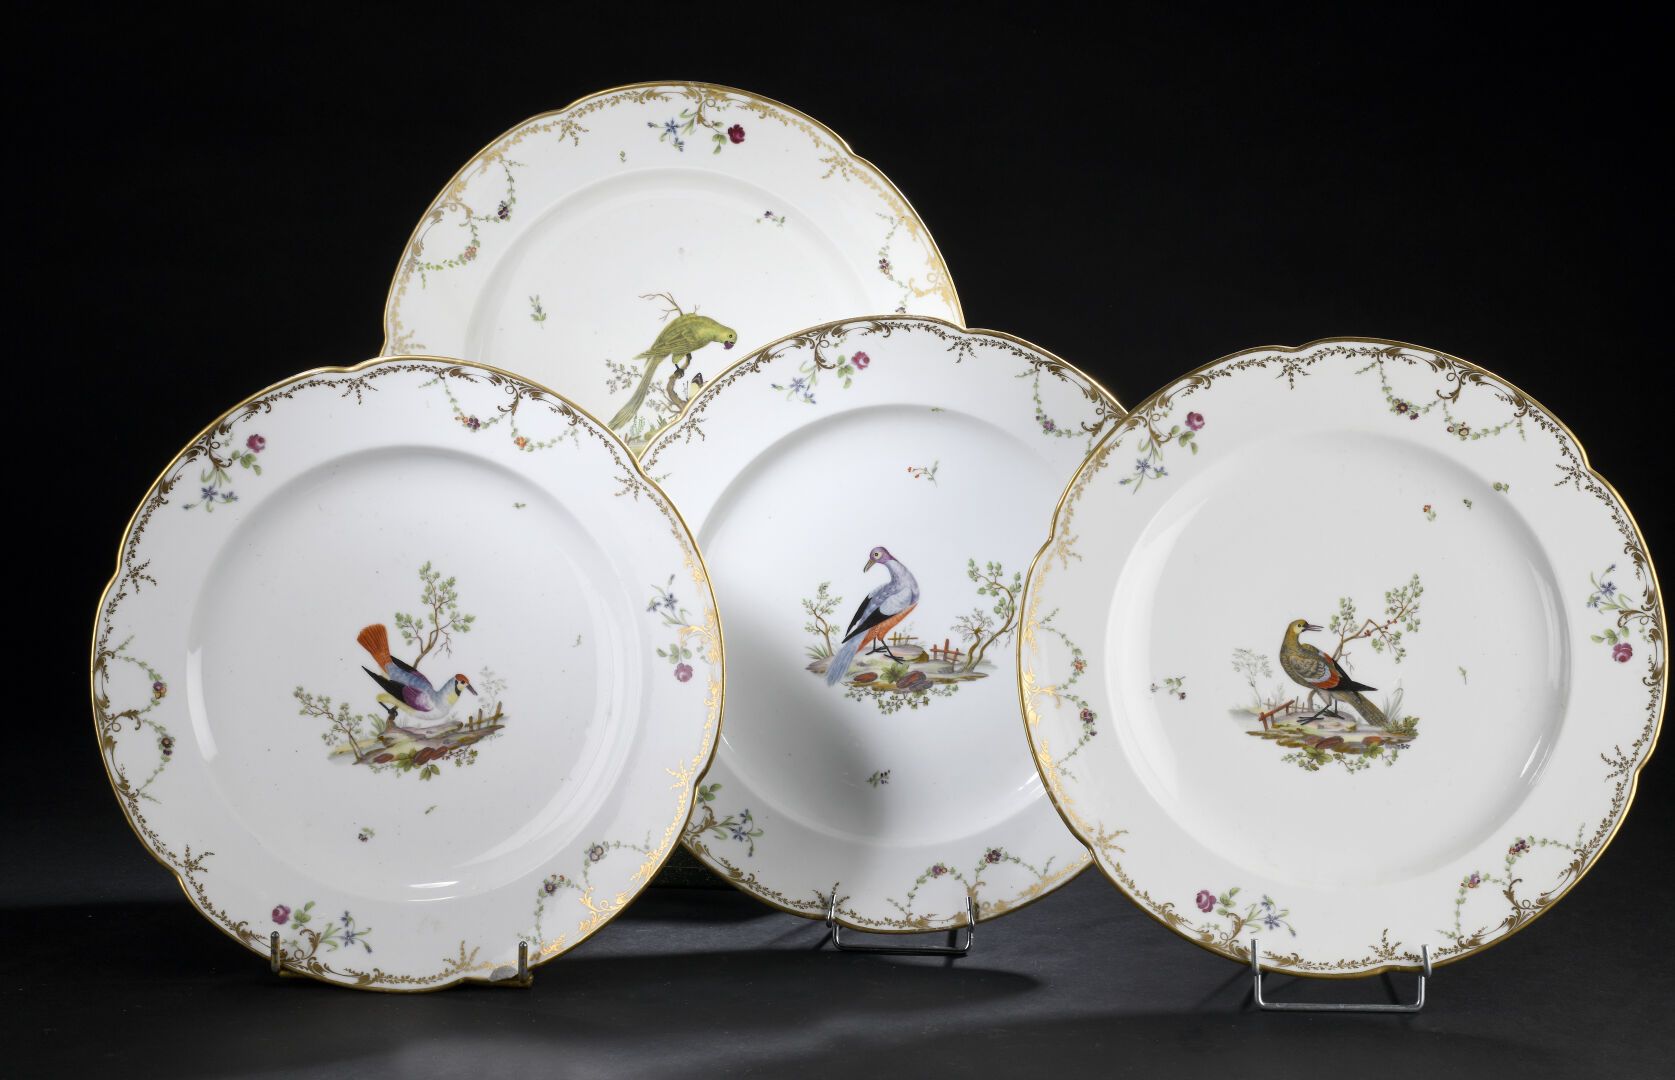 Null PARÍS, siglo XVIII
Cuatro platos redondos de porcelana con bordes contornea&hellip;